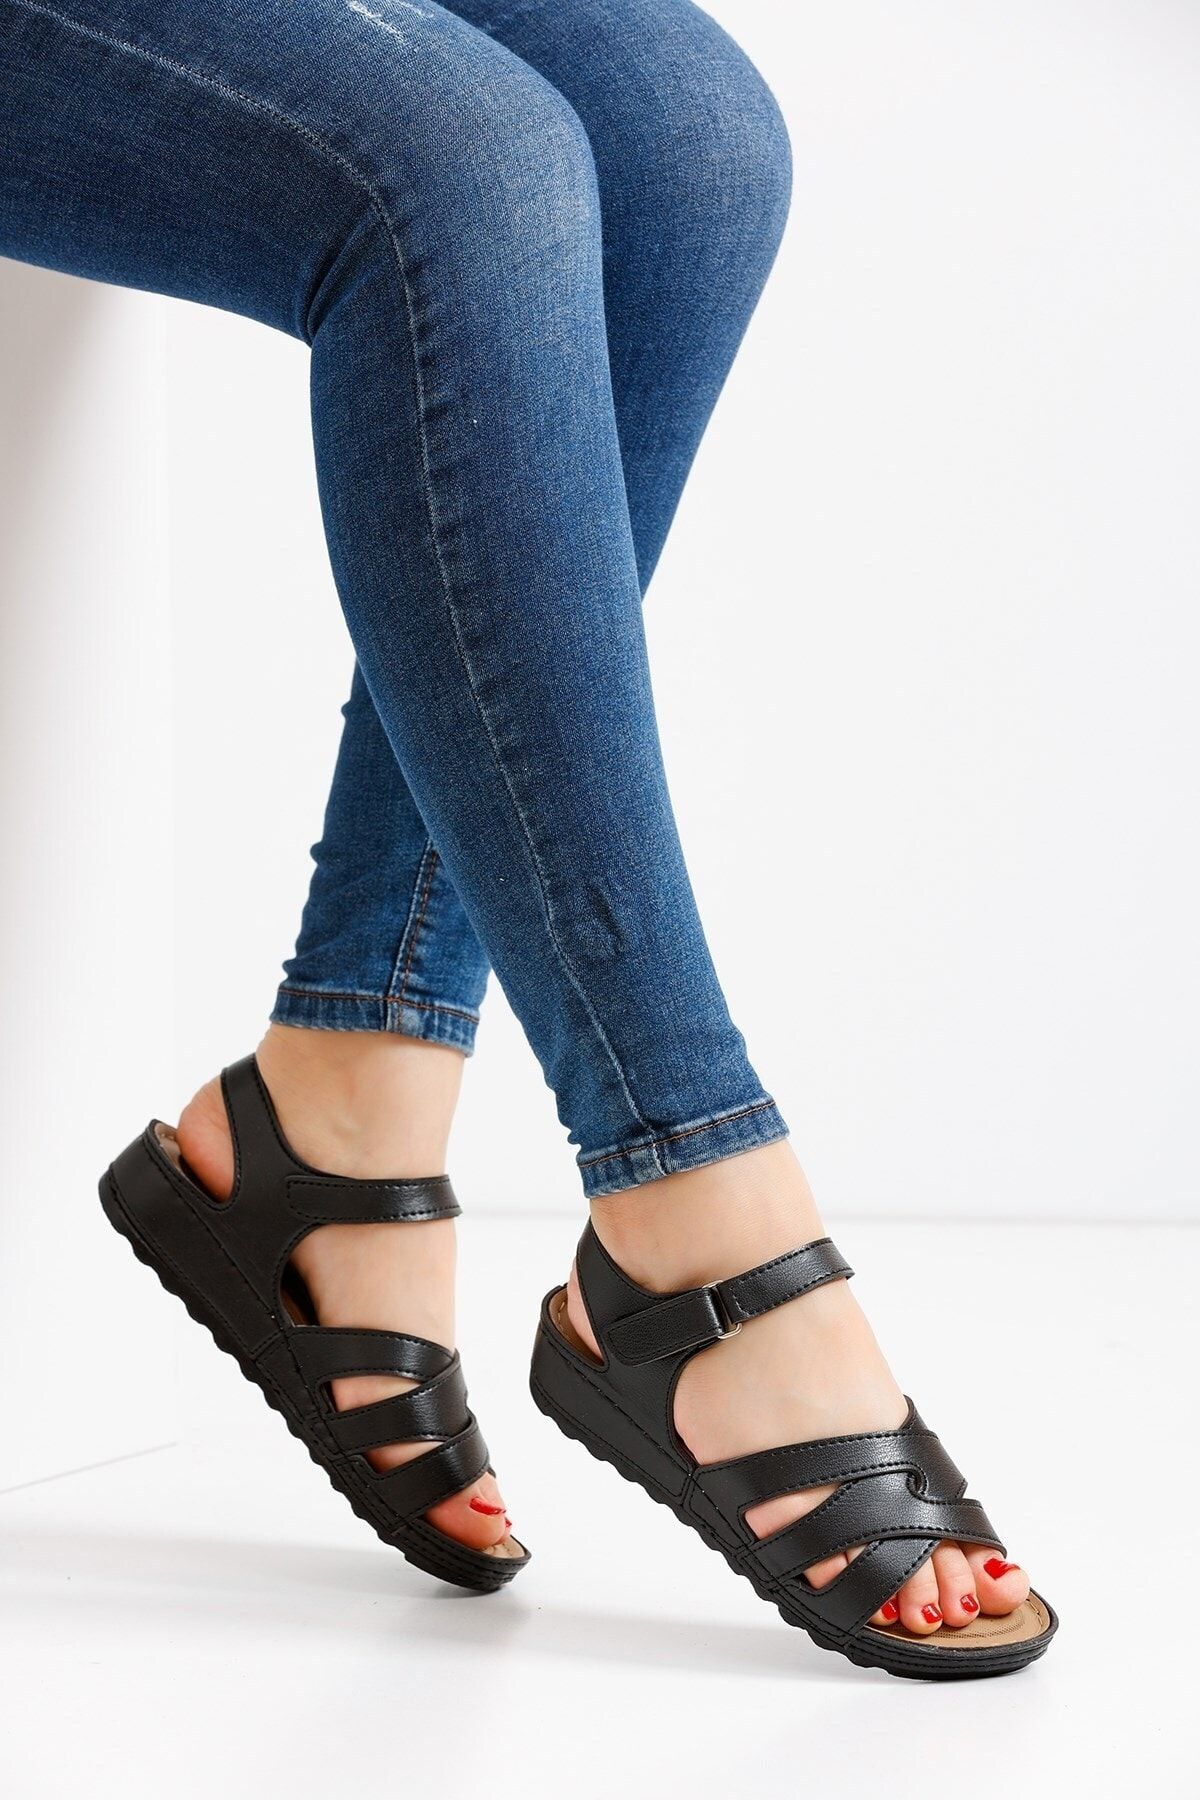 ALTUNTAŞ Kadın Cırt Cırtlı Ortapedik Soft Tbana Yazlık Sandalet Modeli - Siyah